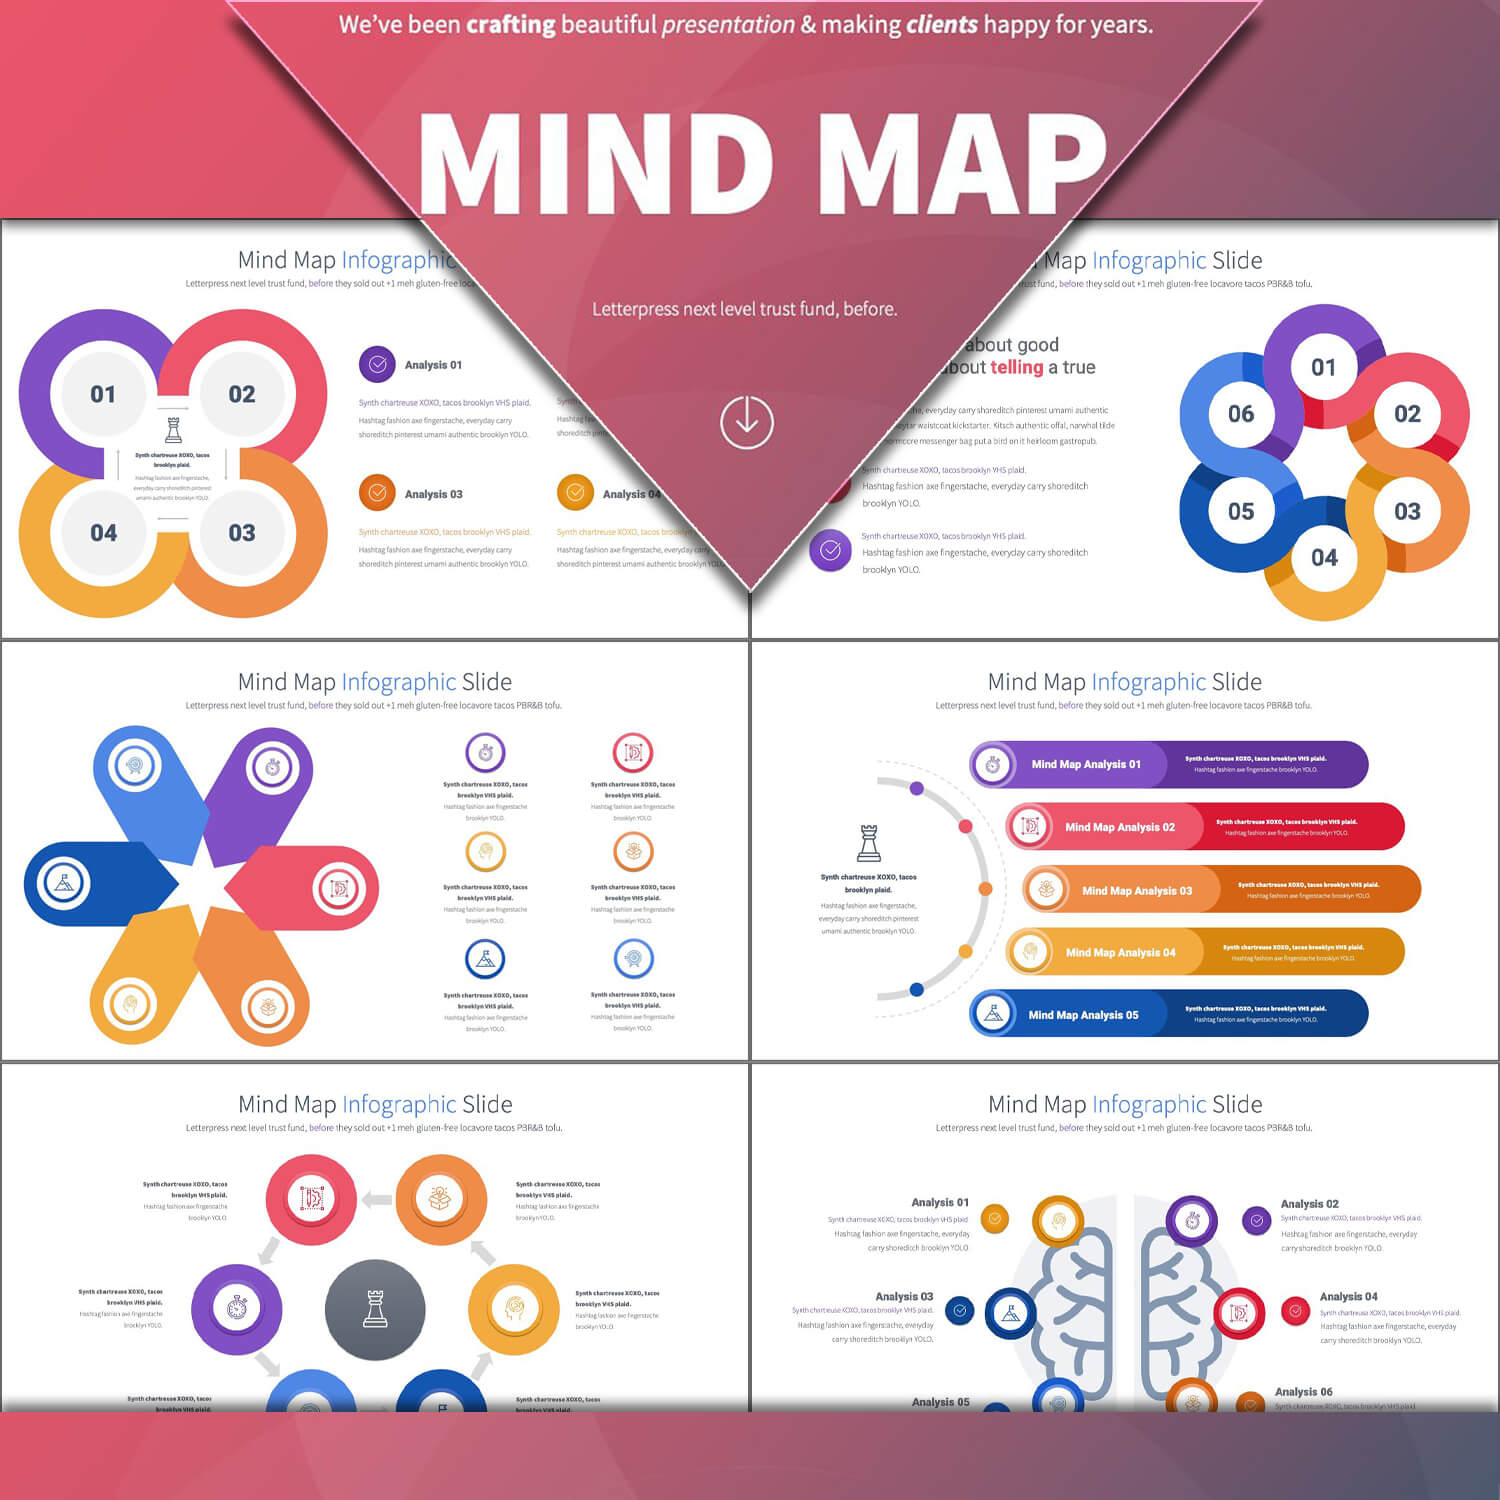 Mind map infographic slide.